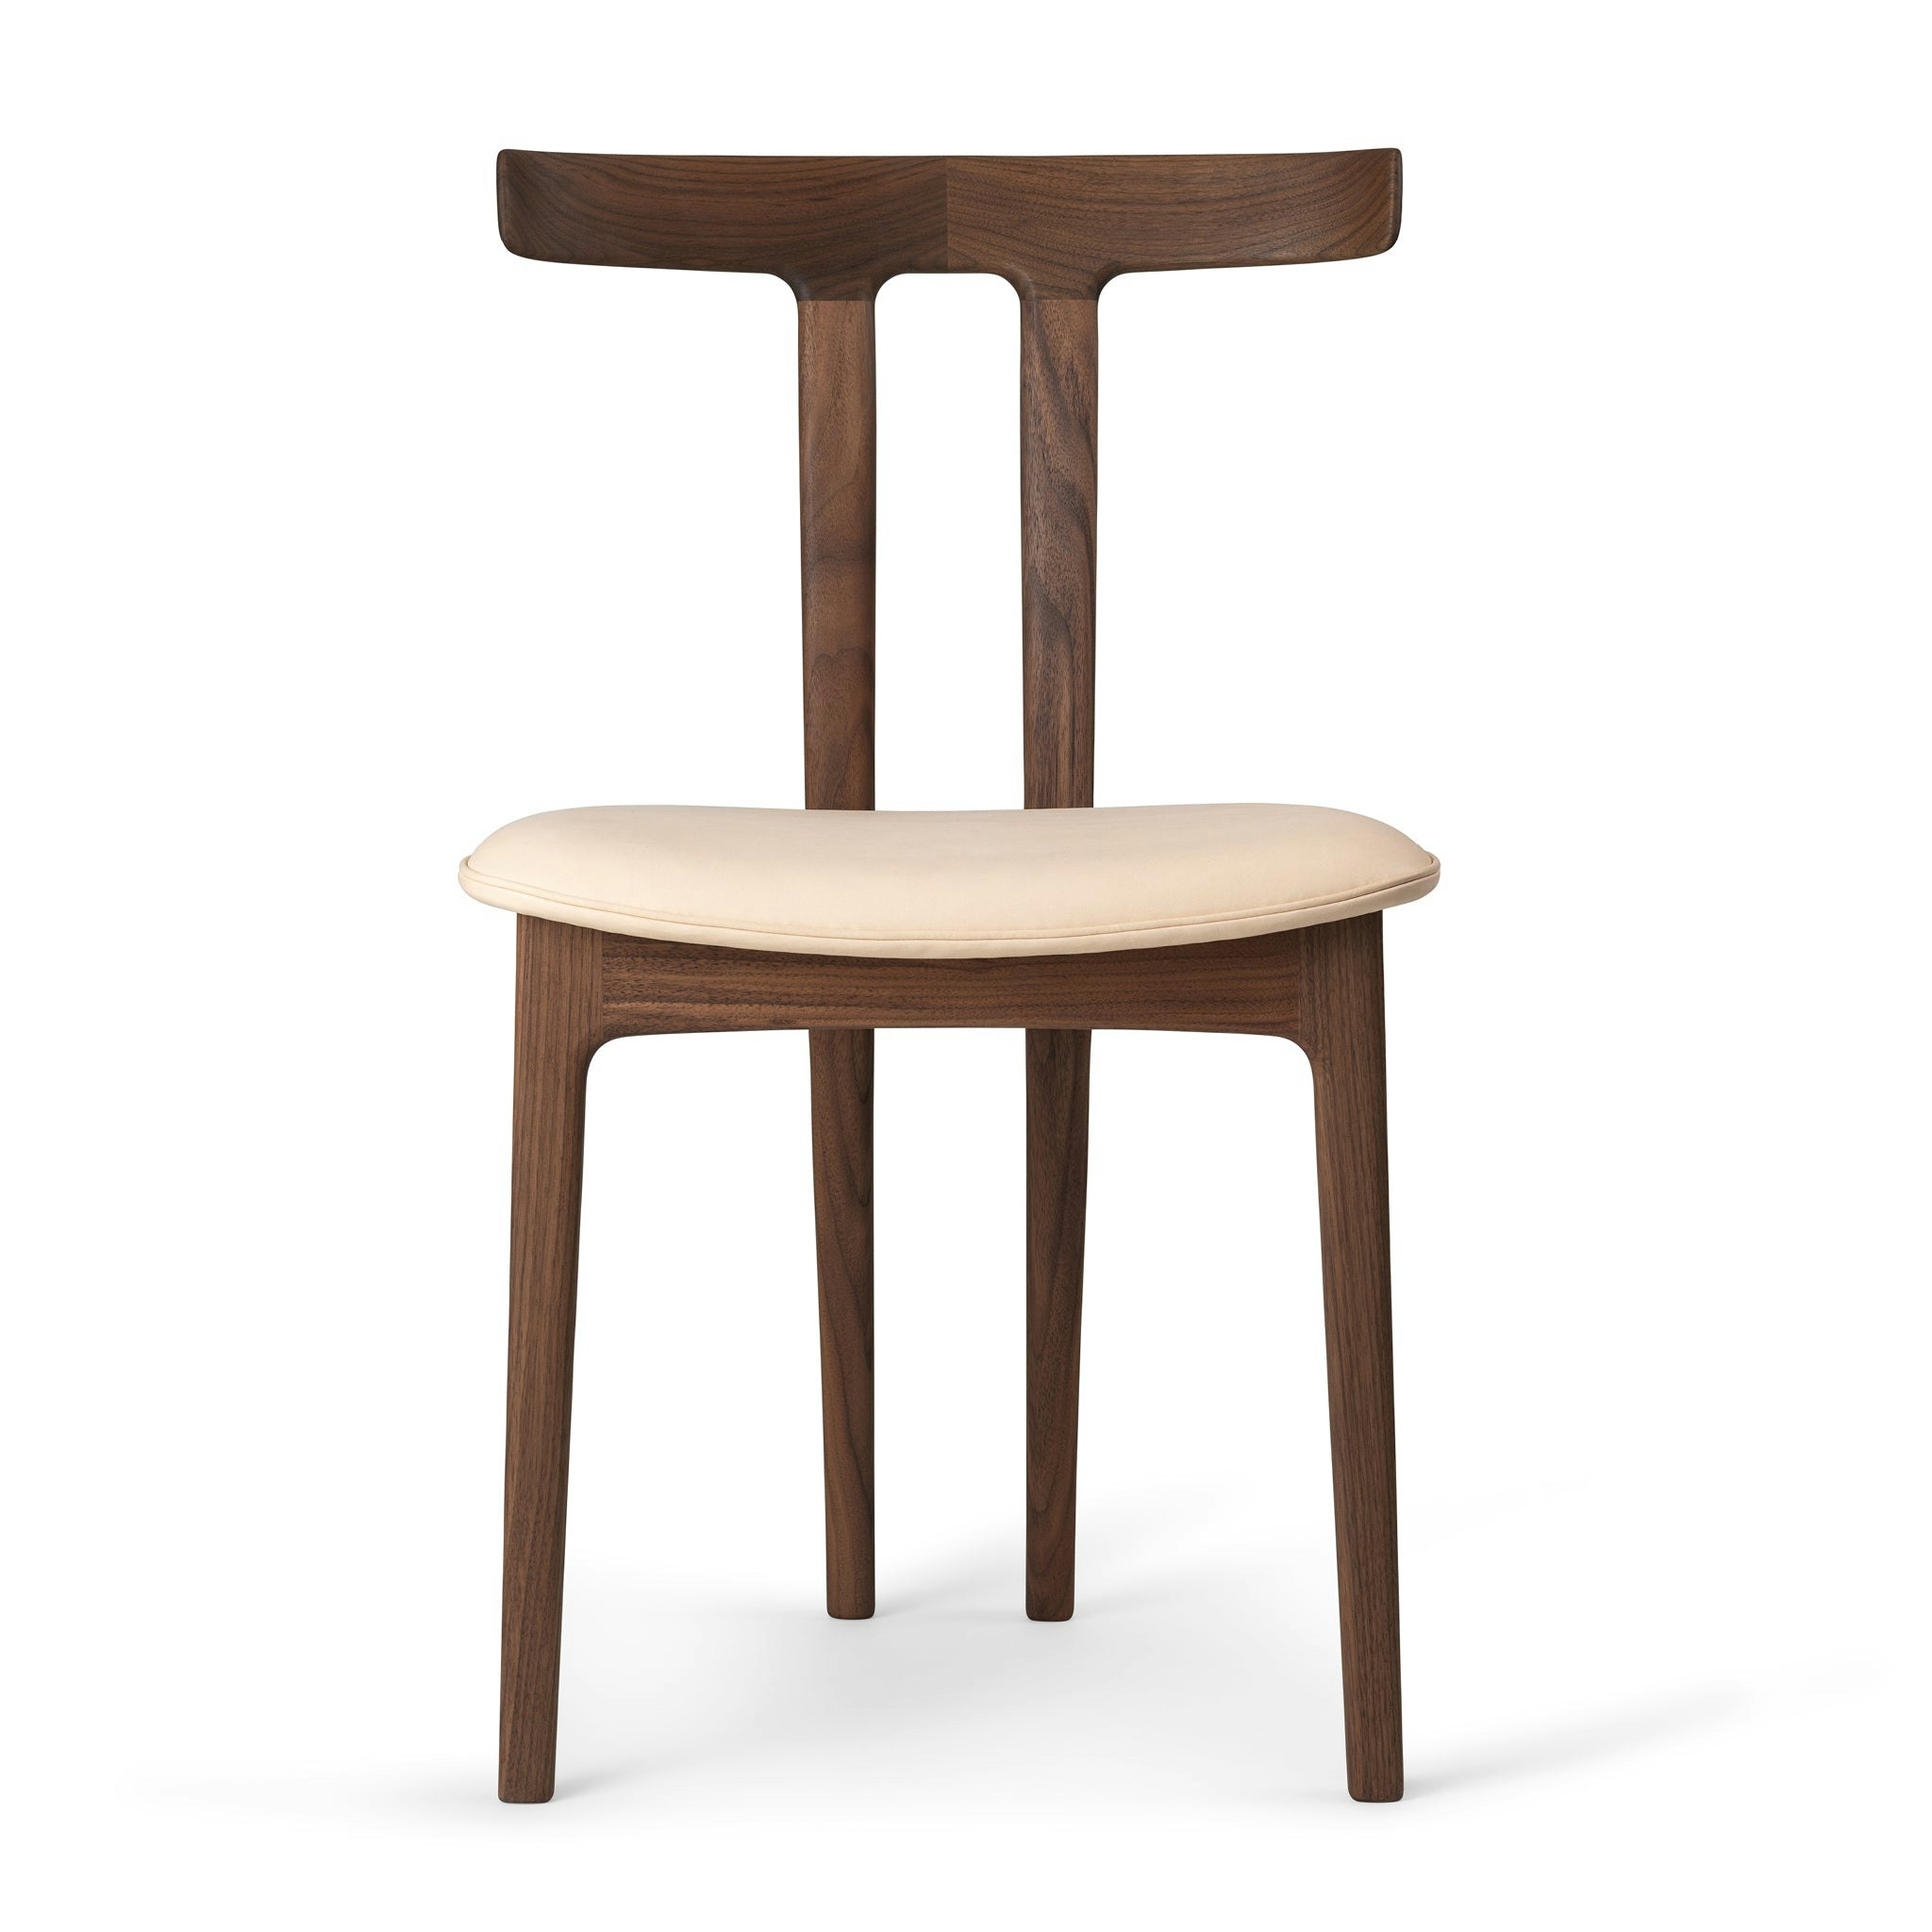 T-Chair OW58 by Carl Hansen & Søn